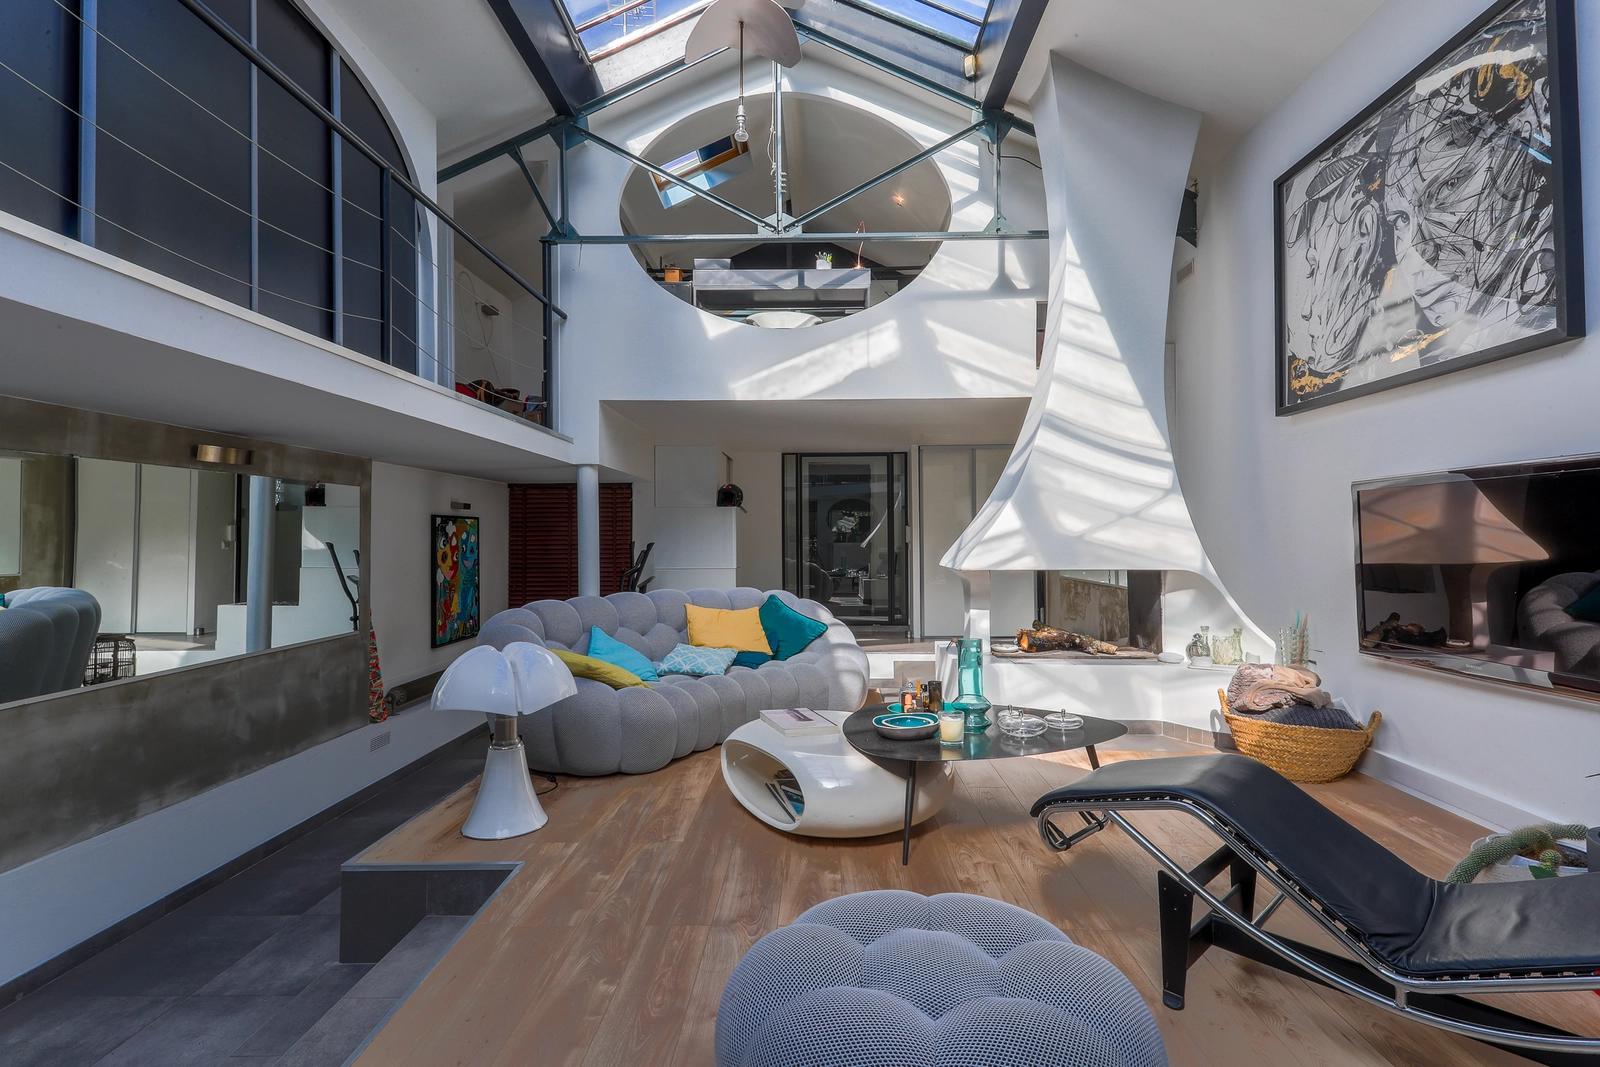 Living room in Loft modern open space - 4